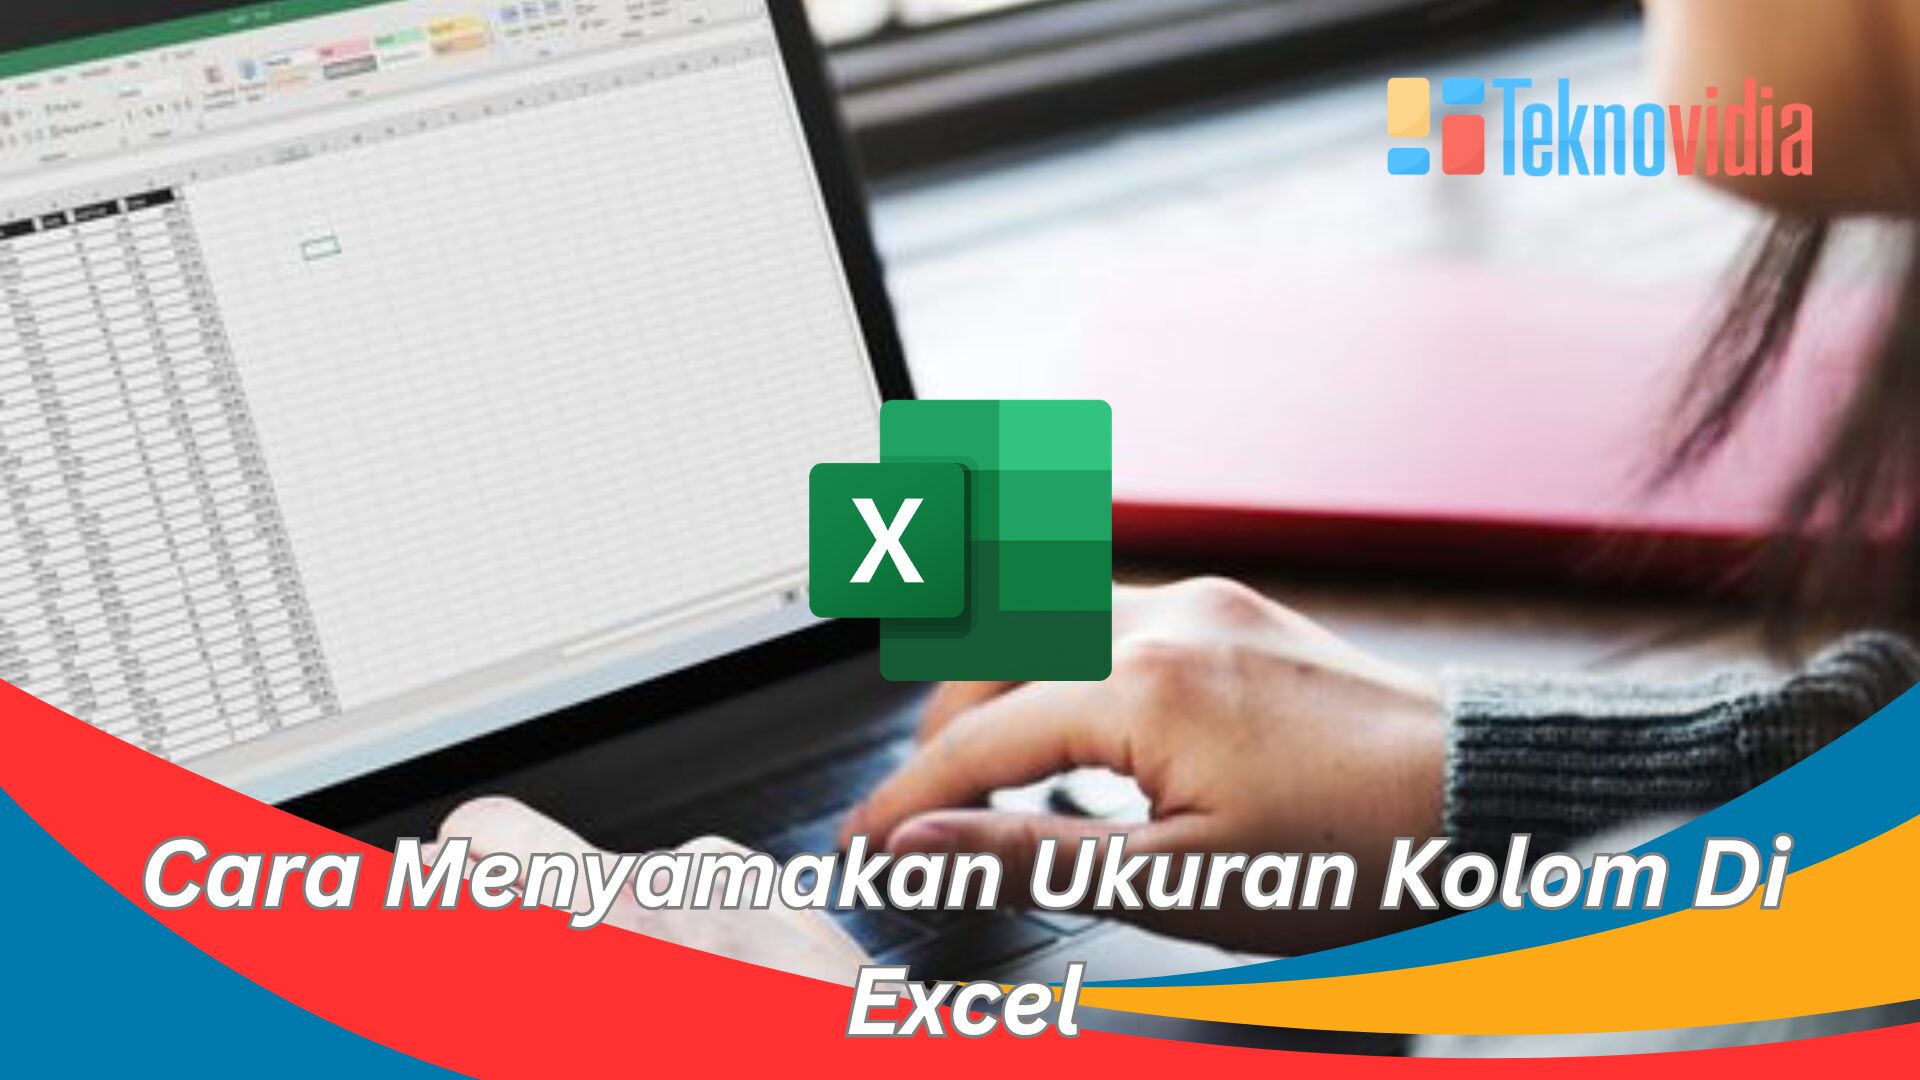 Cara Menyamakan Ukuran Kolom Di Excel